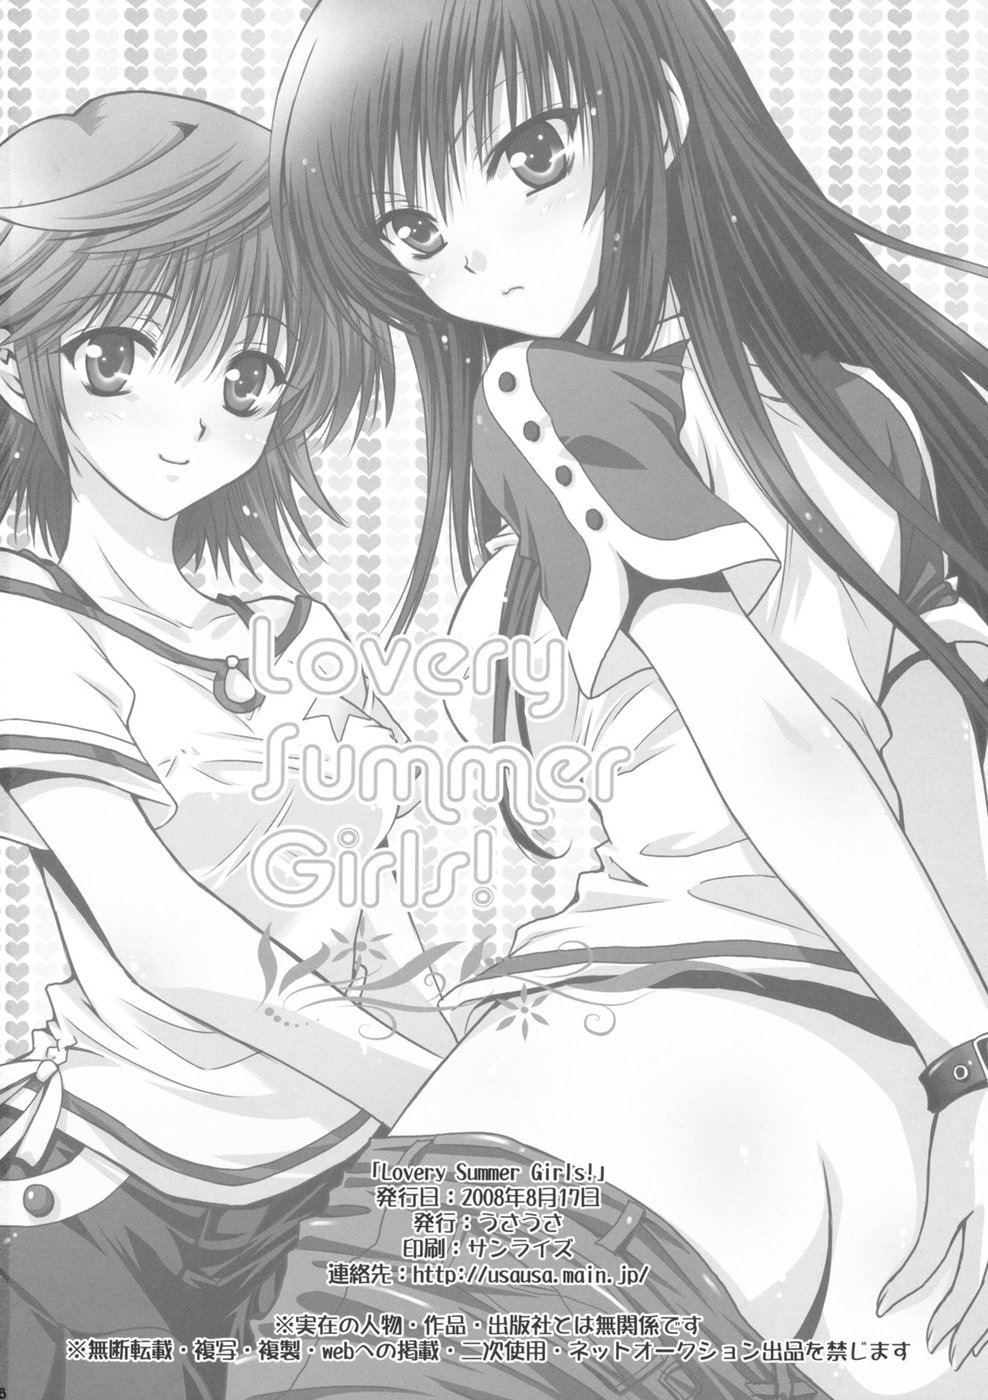 Lovery Summer Girls! to love-ru 25 hentai manga